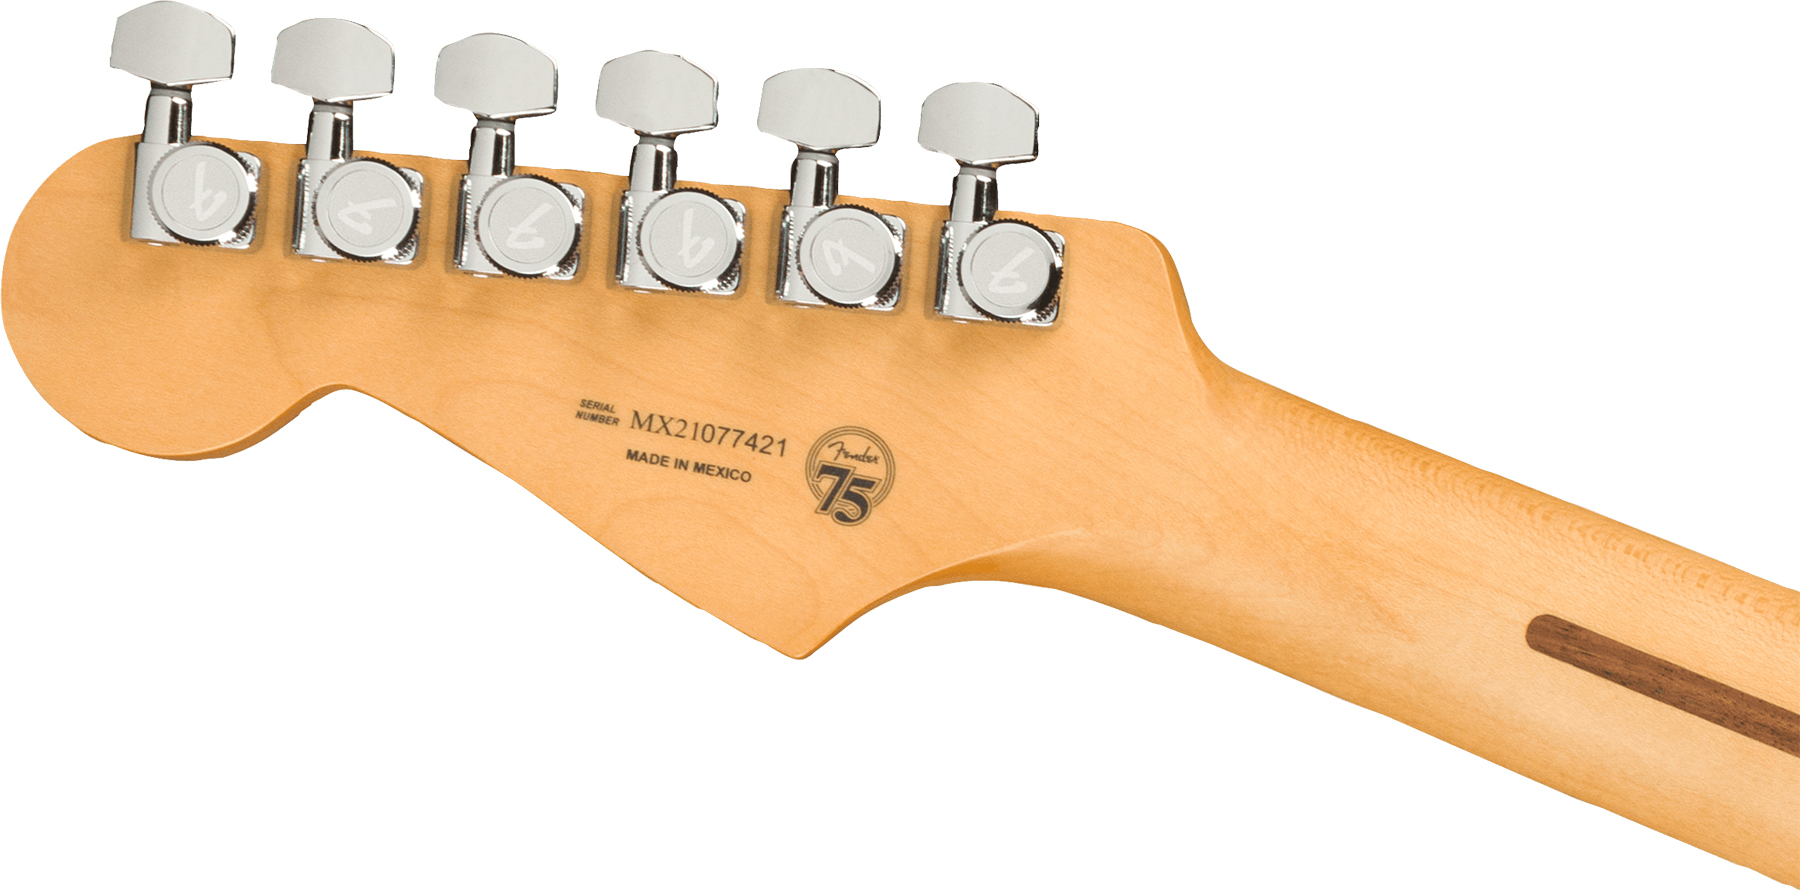 Fender Strat Player Plus Mex Hss Trem Pf - Belair Blue - Elektrische gitaar in Str-vorm - Variation 3